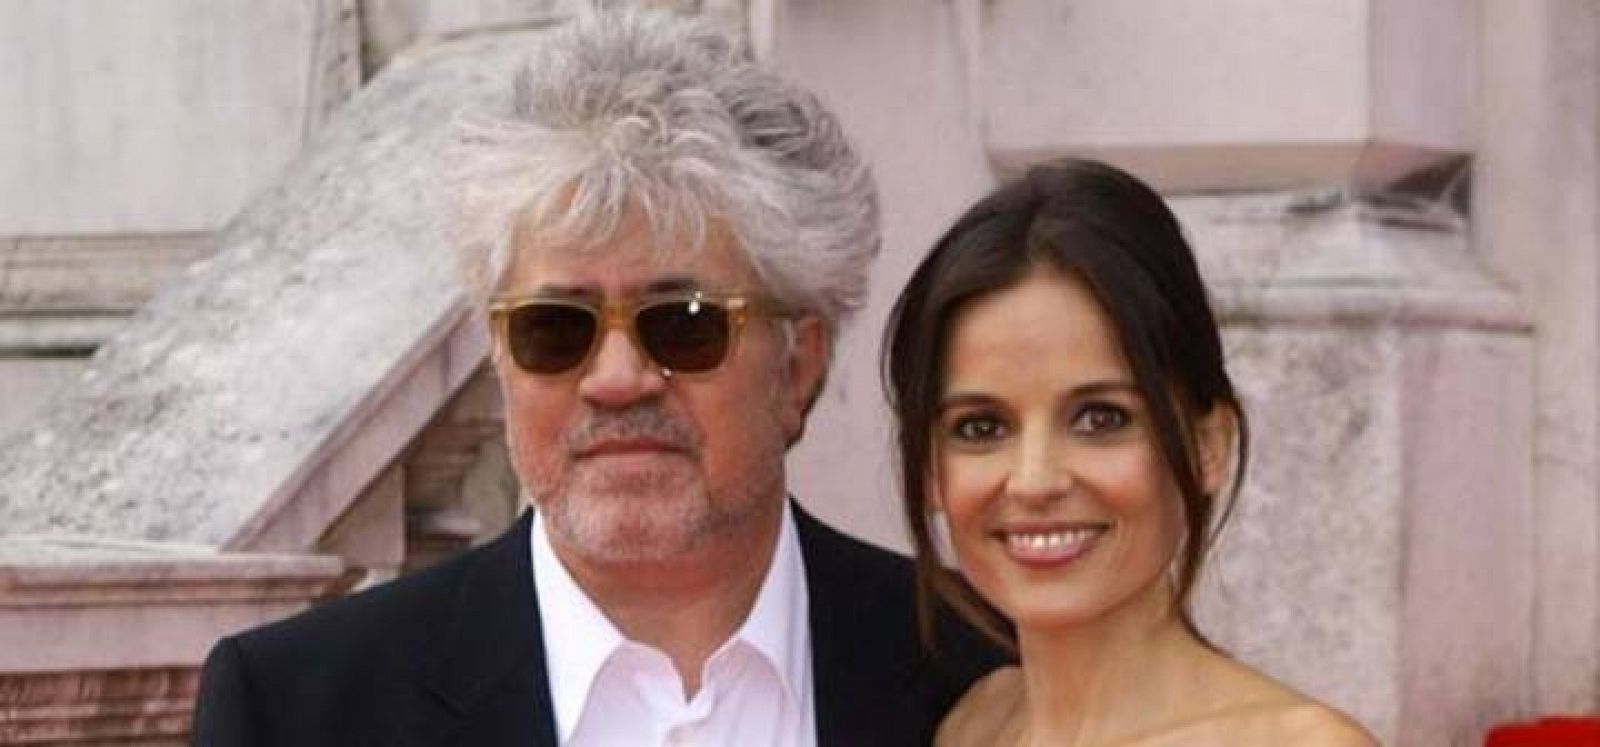 Pedro Almodóvar, acompañado por la actriz Elena Anaya, asiste al estreno de 'La piel que habito' en Londres.